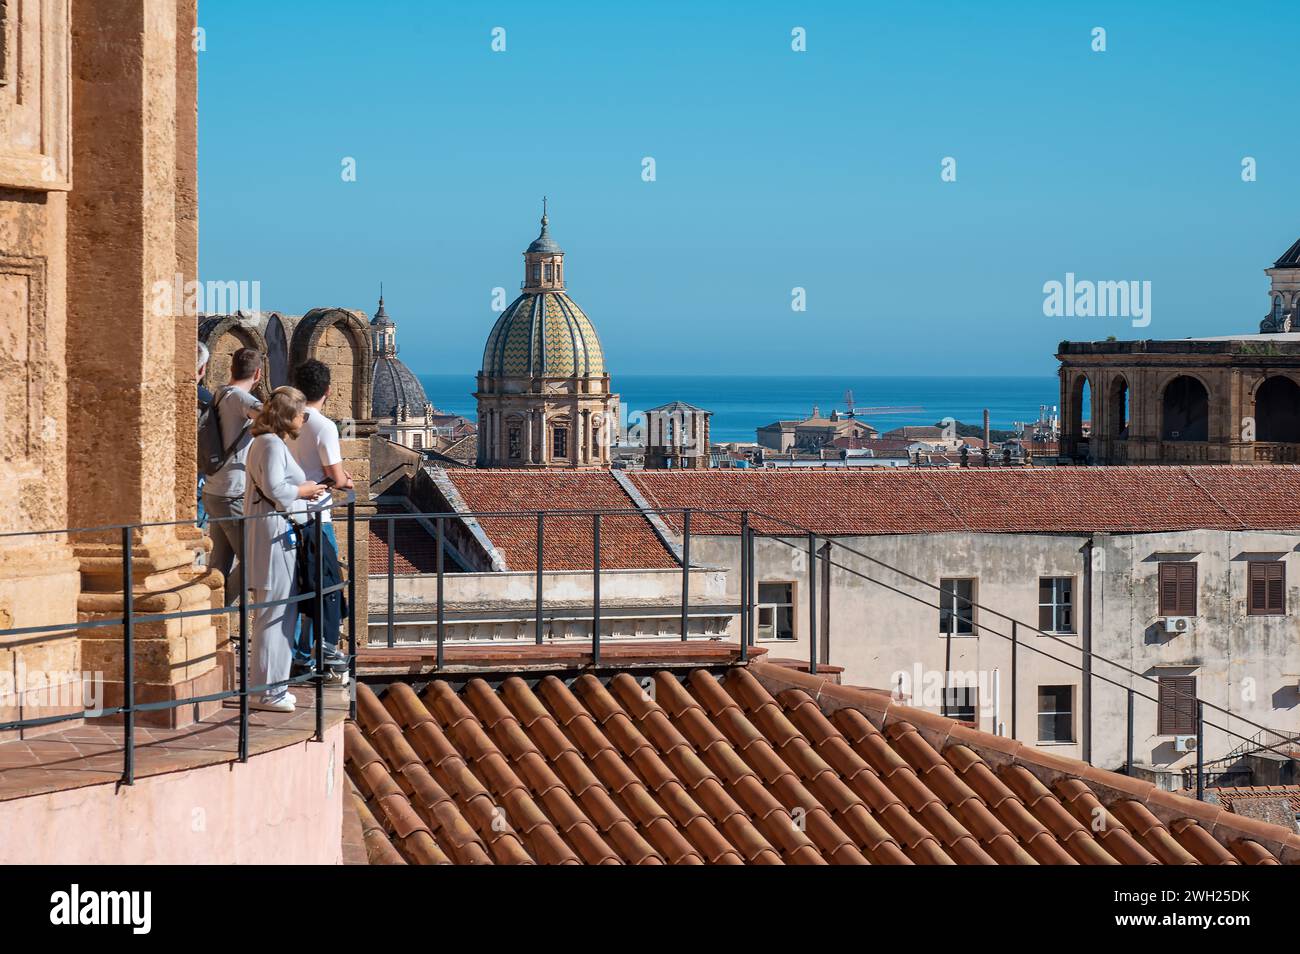 Eine Gruppe von Menschen, die in Sommerkleidung gekleidet sind, steht auf einem Balkon mit Blick auf die belebte Stadt palermo, deren Blick auf die majestätische Kathedrale A gerichtet ist Stockfoto